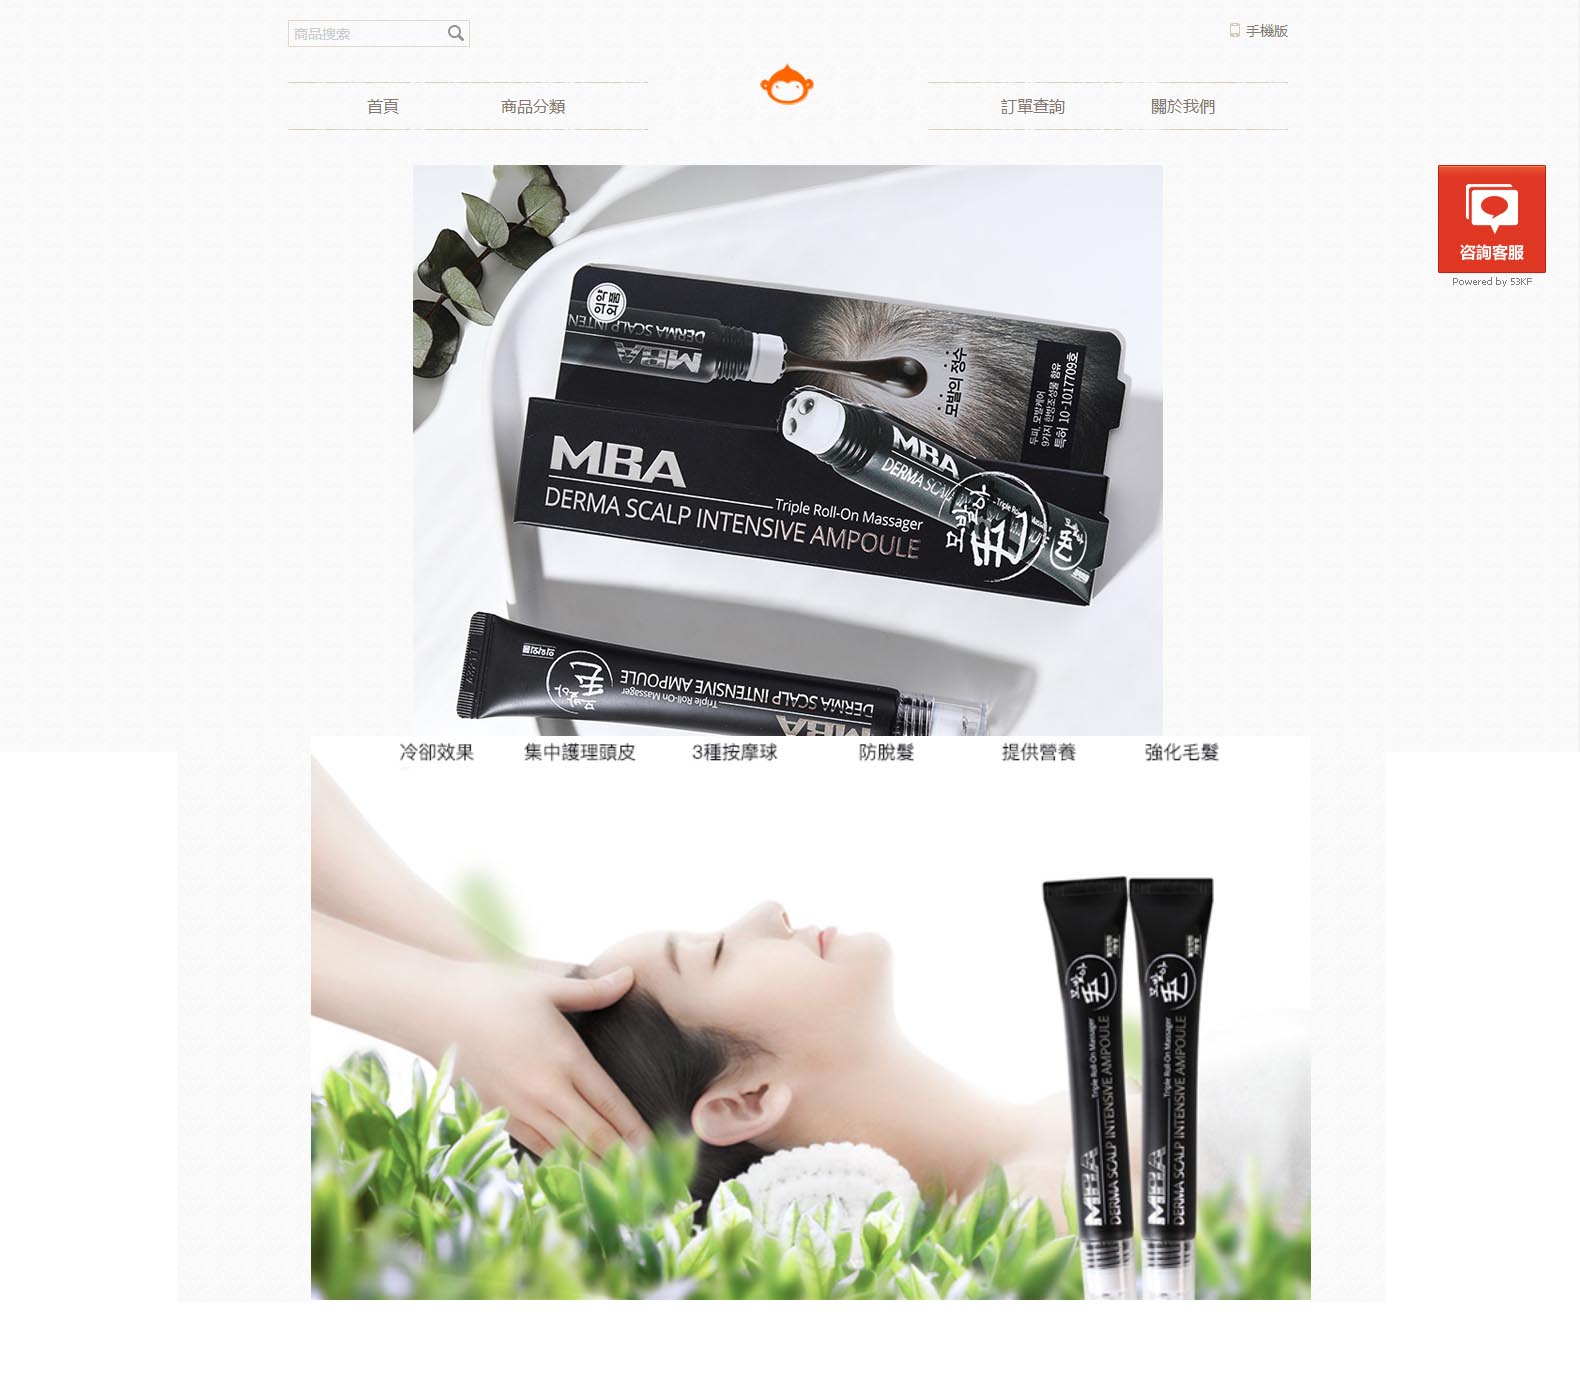 韓國MBA魚腥草生髮液台灣官方店-頭皮按摩治療脫髮,防止掉髮